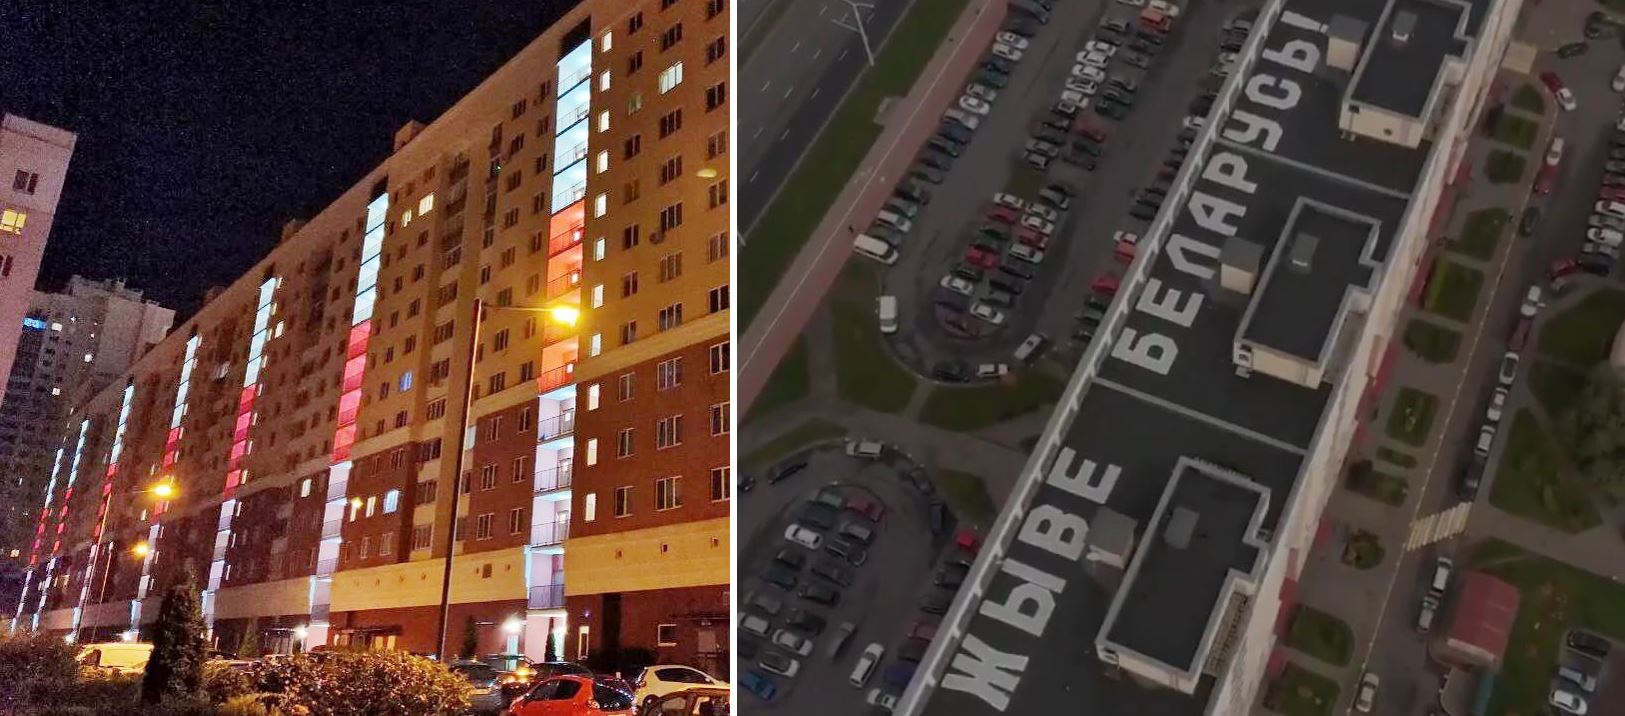 “Это месть за активную позицию”: подробности обысков на Дзержинского в Минске